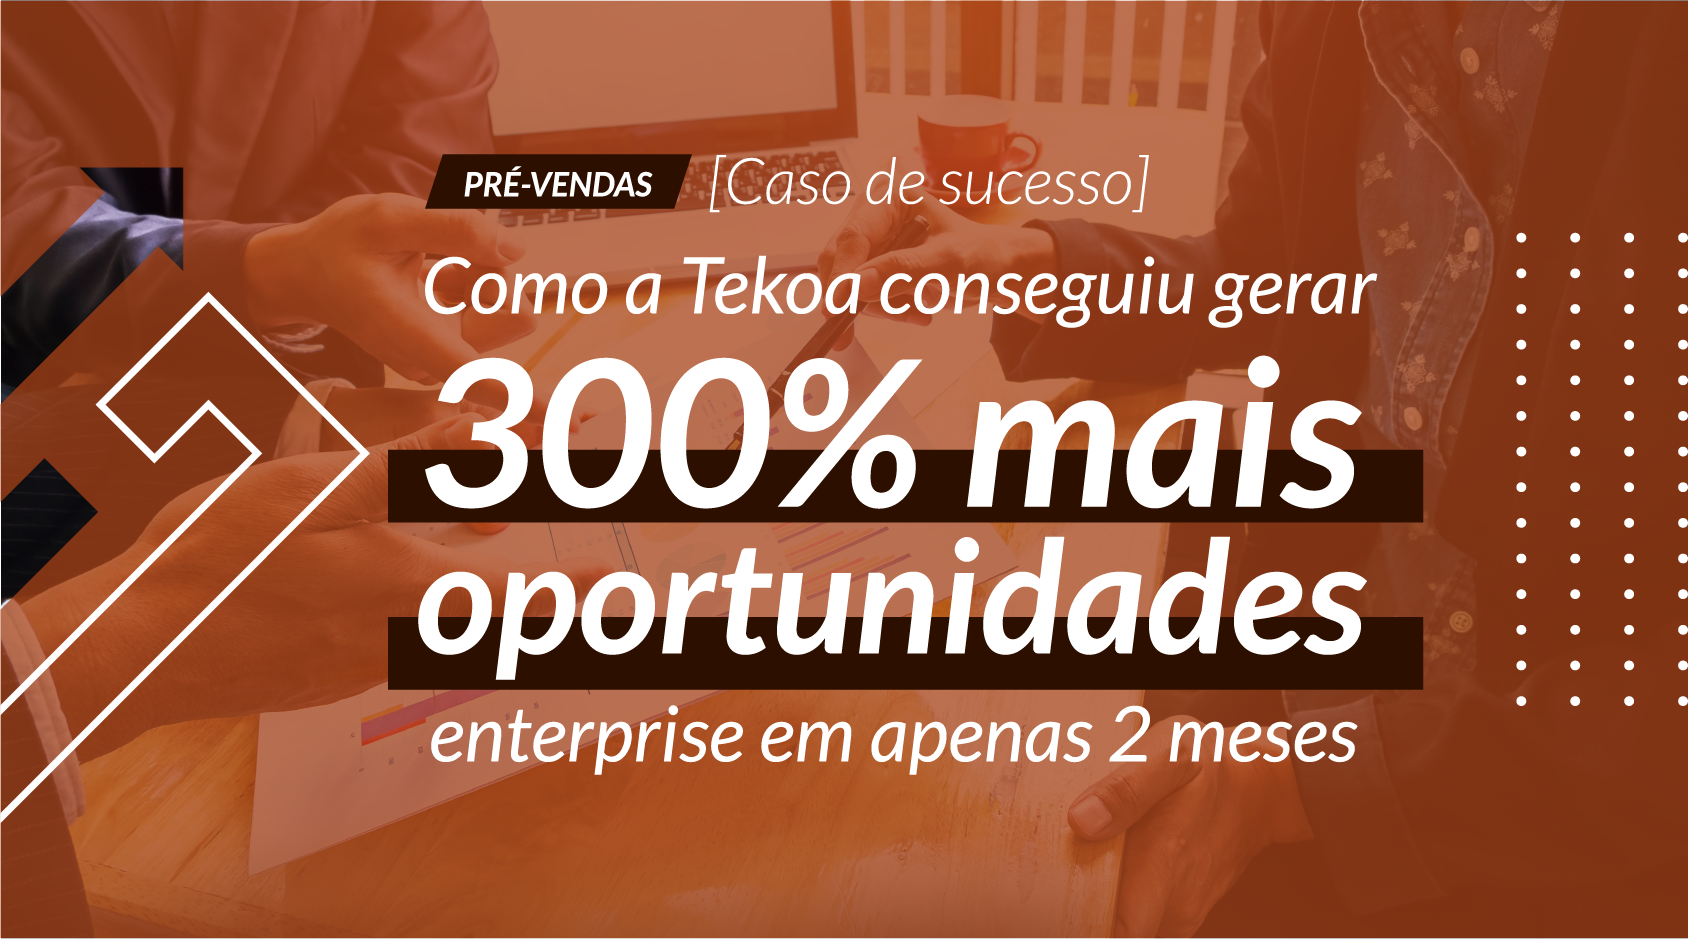  [Caso de sucesso] Como a Tekoa teve um aumento de 300% na geração de oportunidades